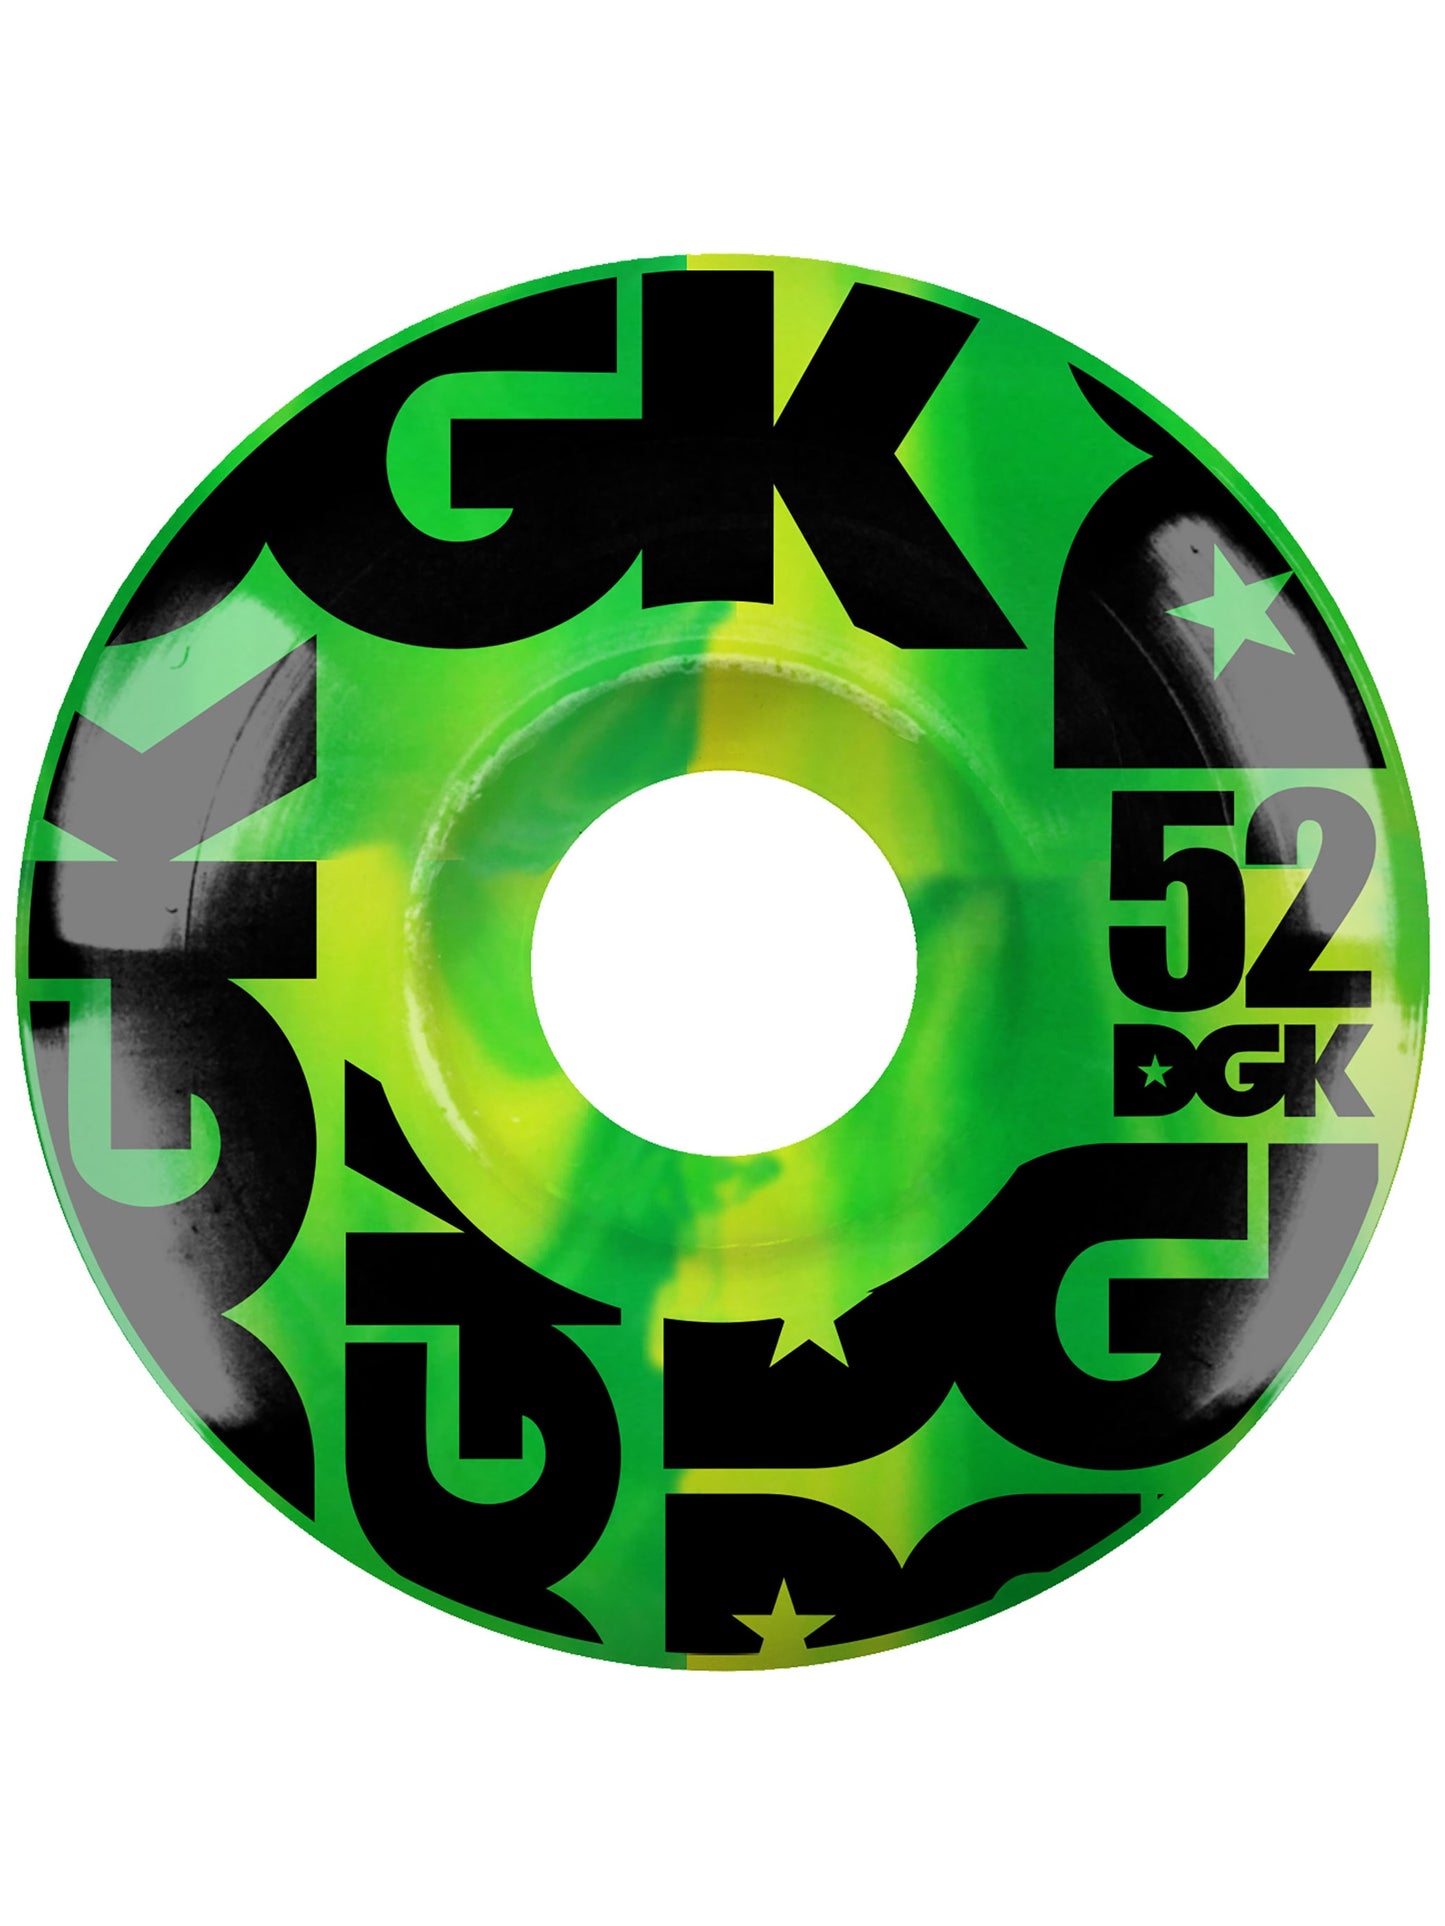 DGK スワール フォーミュラ グリーン ホイール 52mm/101a